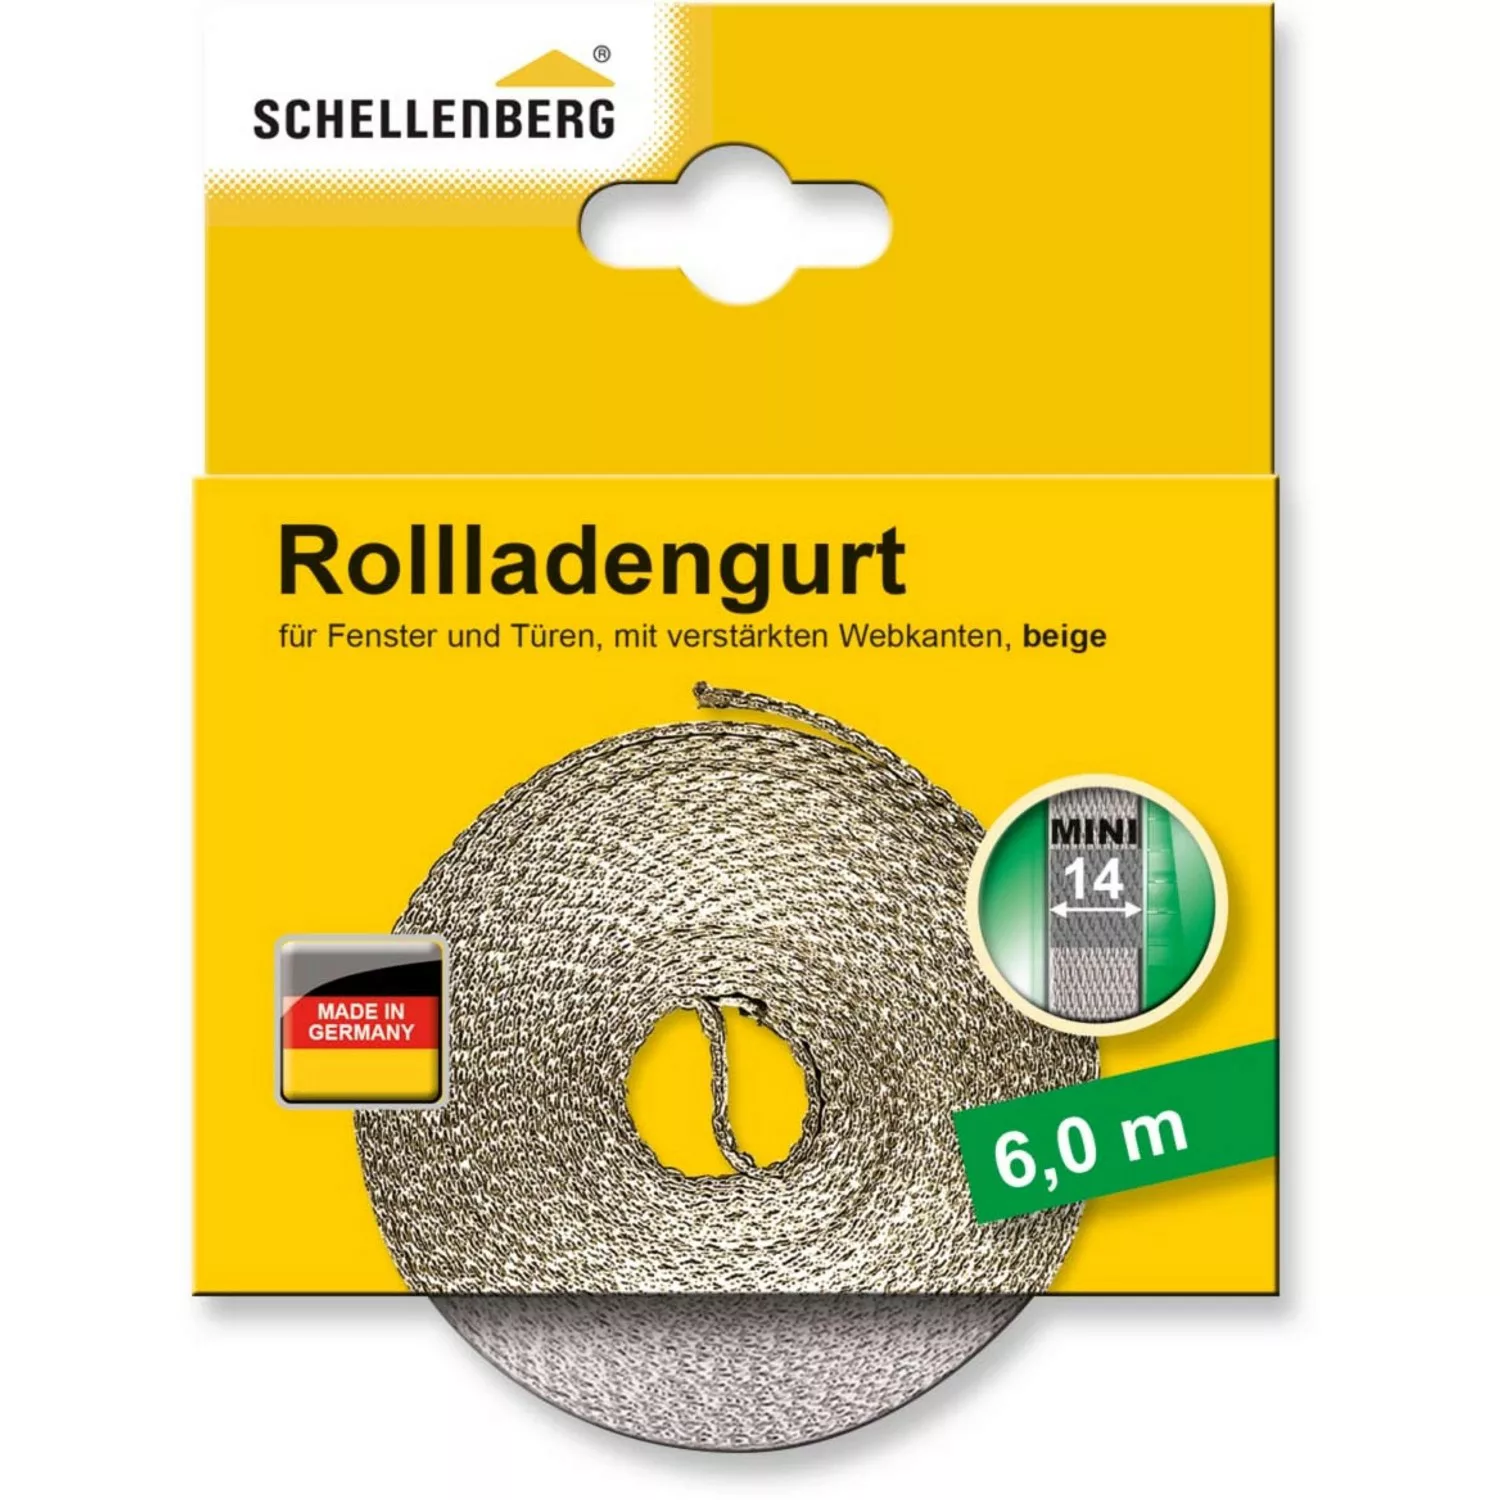 Schellenberg Rollladengurt Mini 14 mm 6 m Beige günstig online kaufen